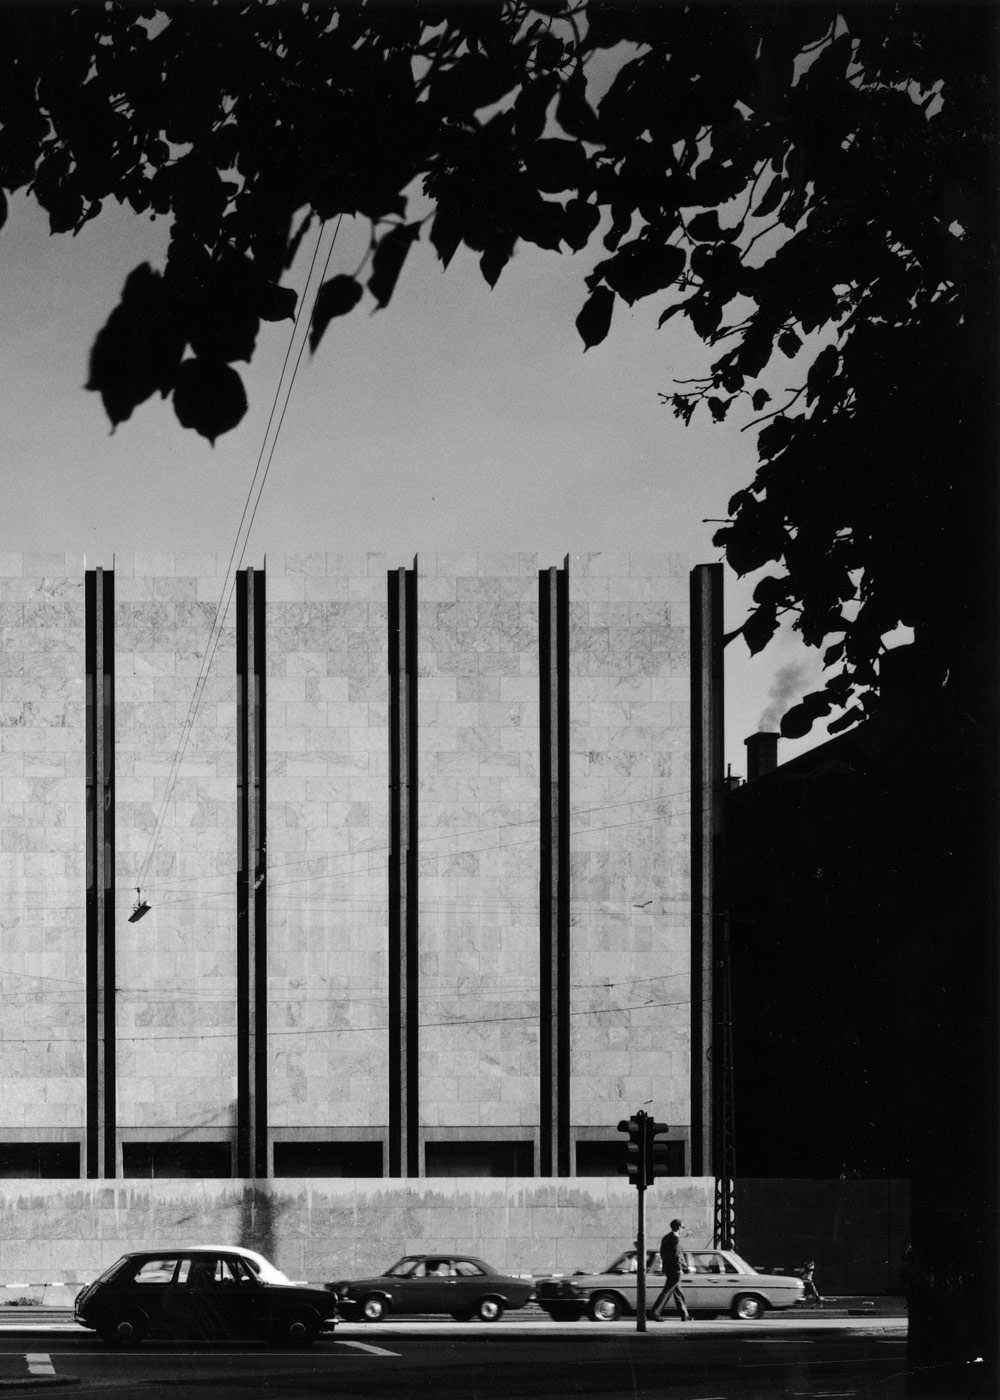 Arne Jacobsen Architect and designer